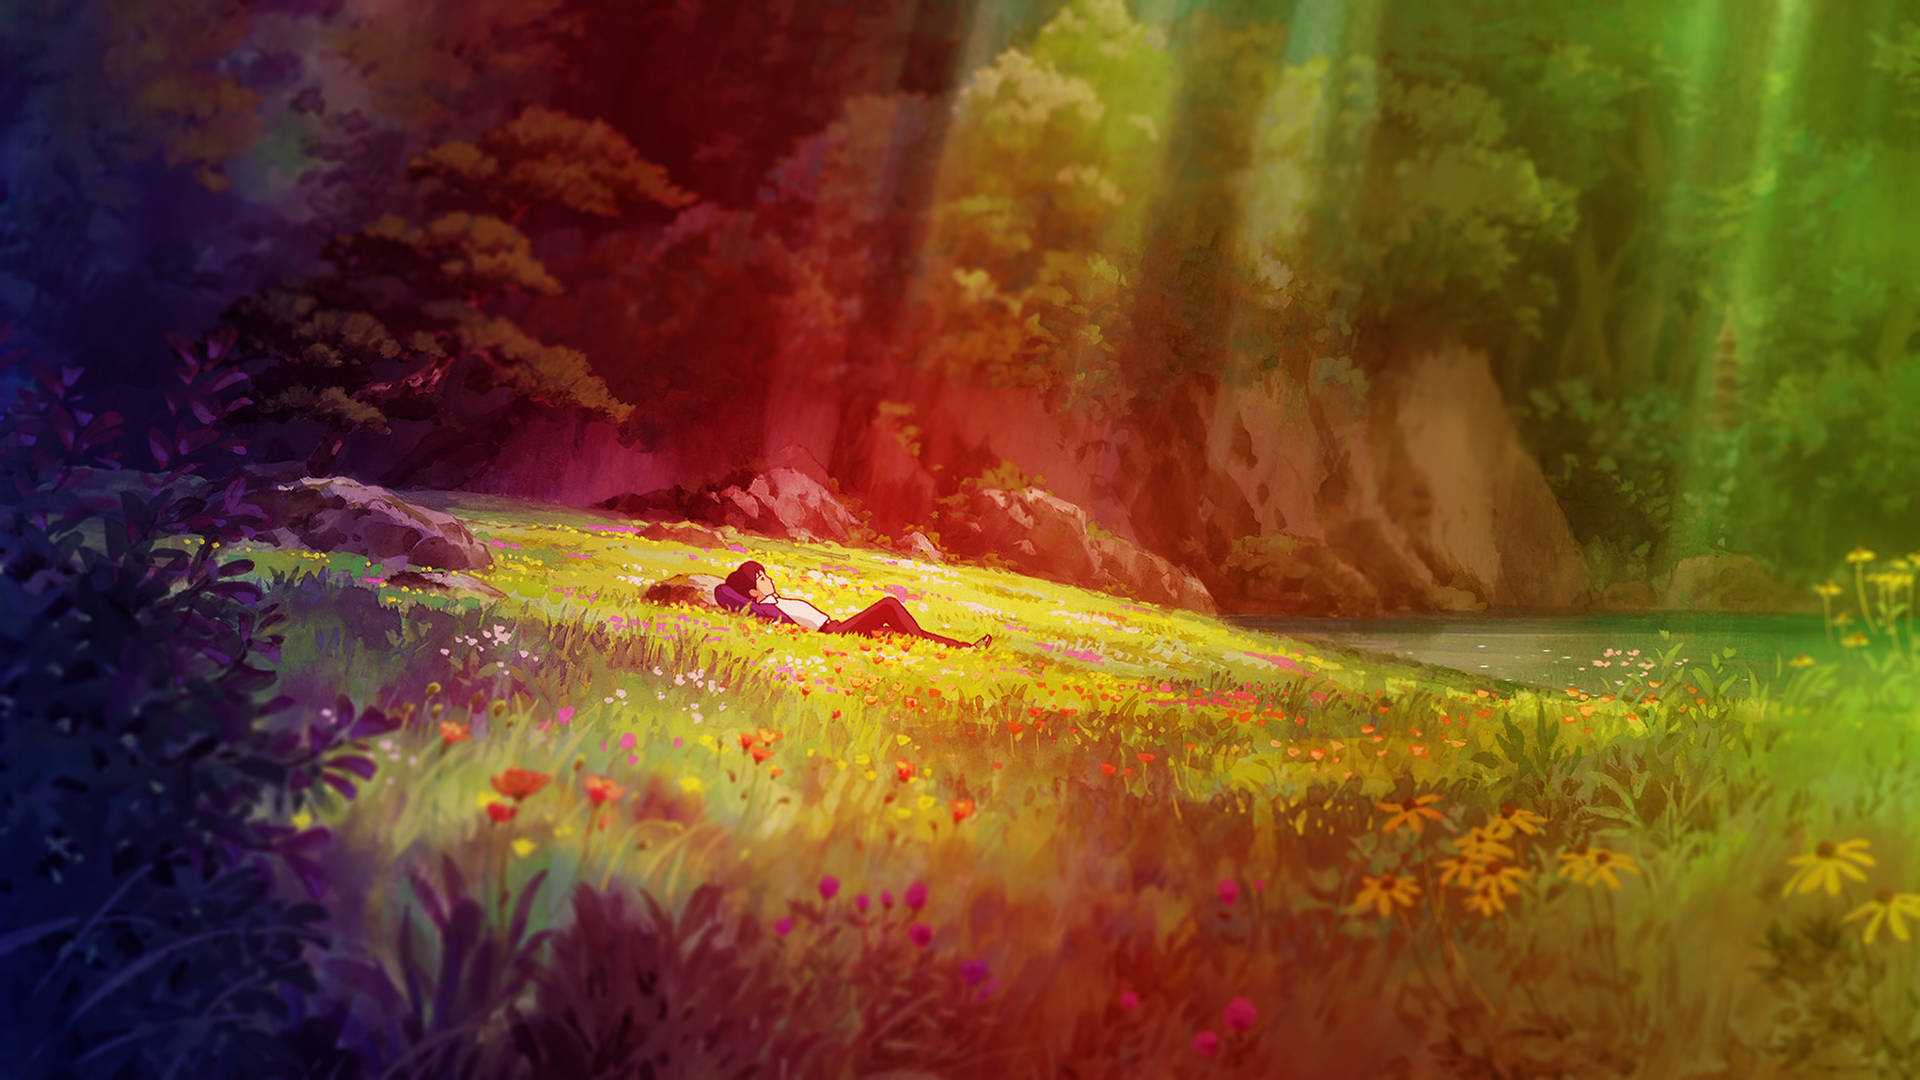 “A little Borrower from Studio Ghibli's Arrietty” Wallpaper